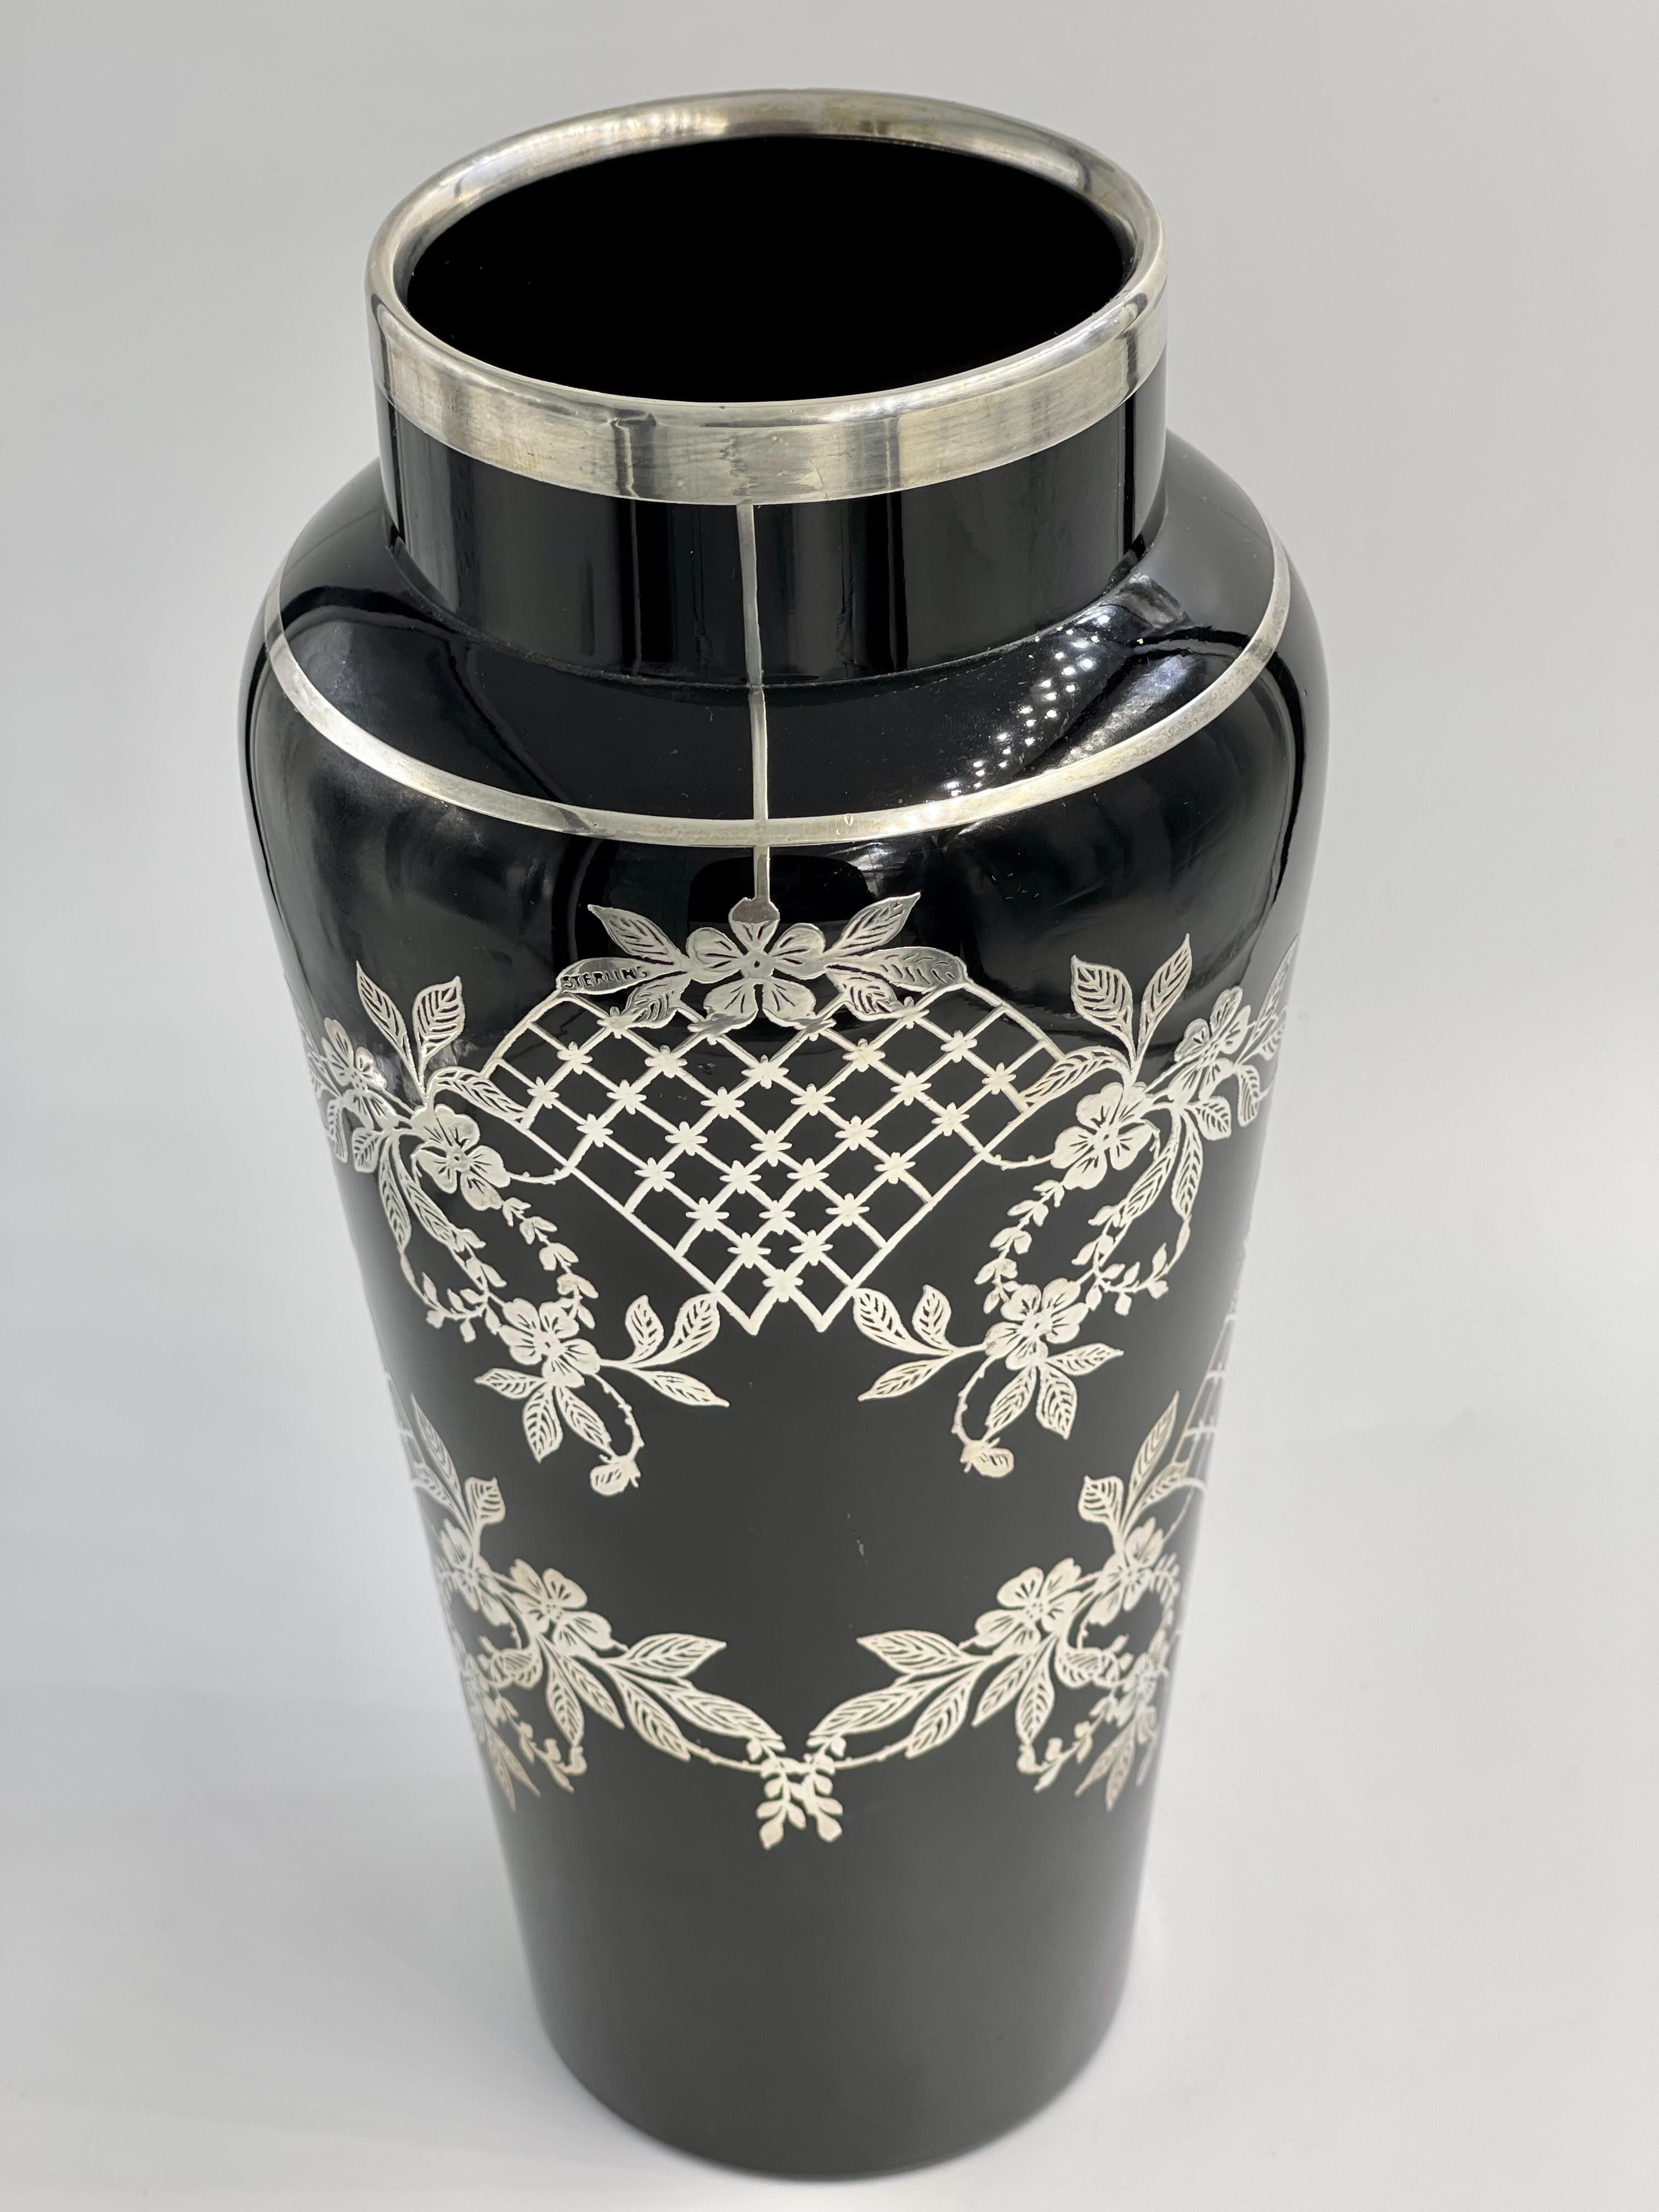 Lattice Flower Floral Sterling Silver Overlay Black Amethyst Glass Vase For Sale 2